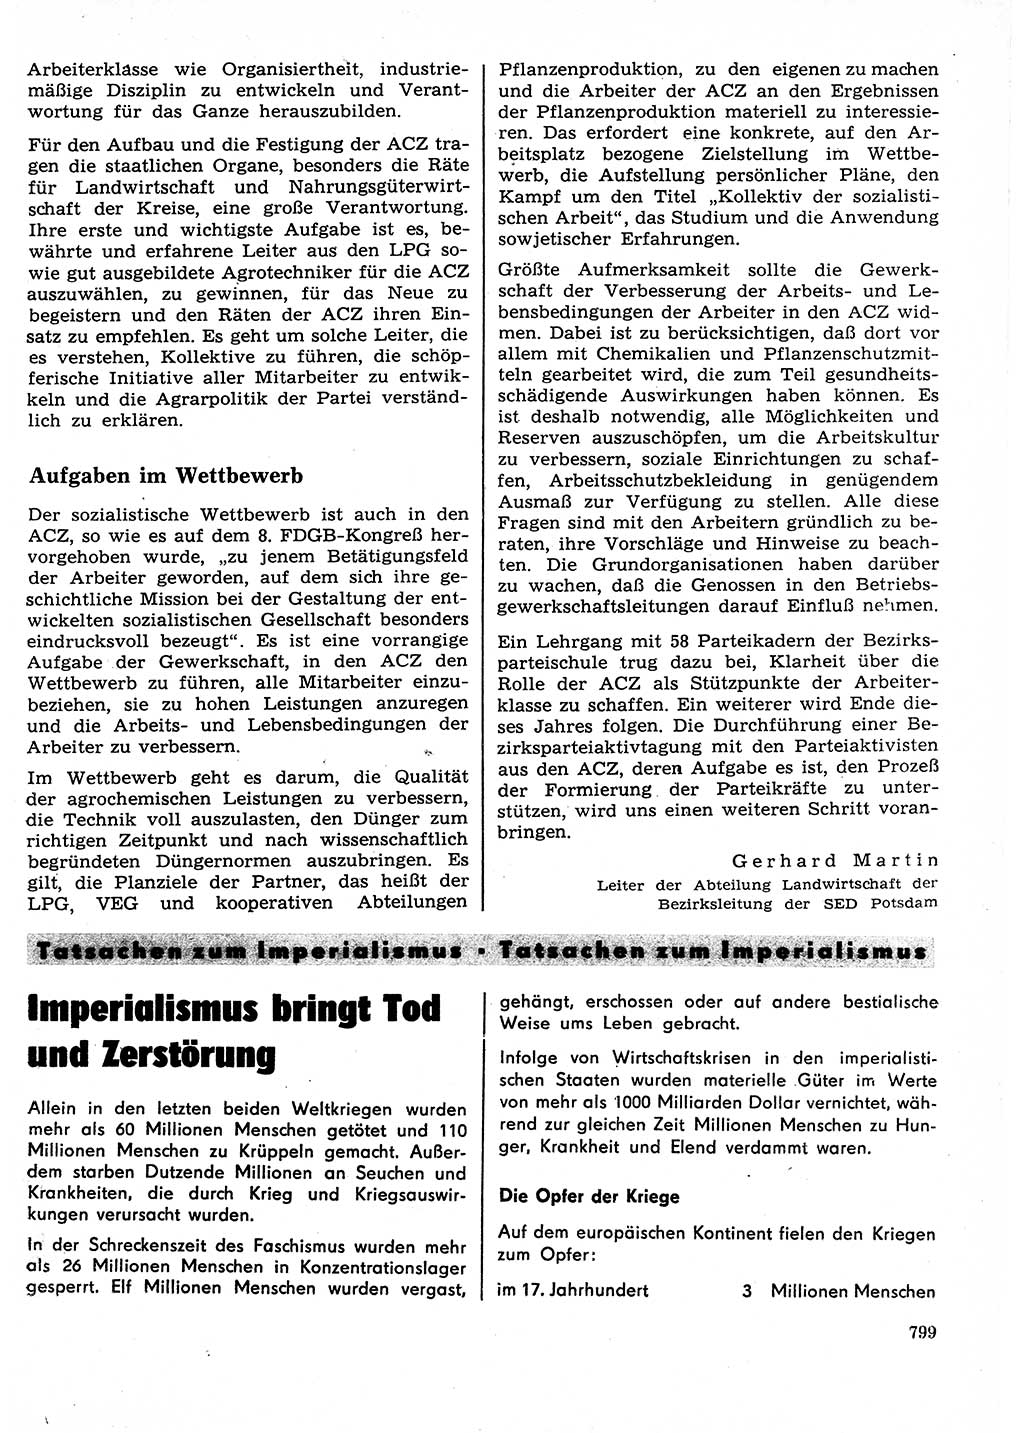 Neuer Weg (NW), Organ des Zentralkomitees (ZK) der SED (Sozialistische Einheitspartei Deutschlands) für Fragen des Parteilebens, 27. Jahrgang [Deutsche Demokratische Republik (DDR)] 1972, Seite 799 (NW ZK SED DDR 1972, S. 799)